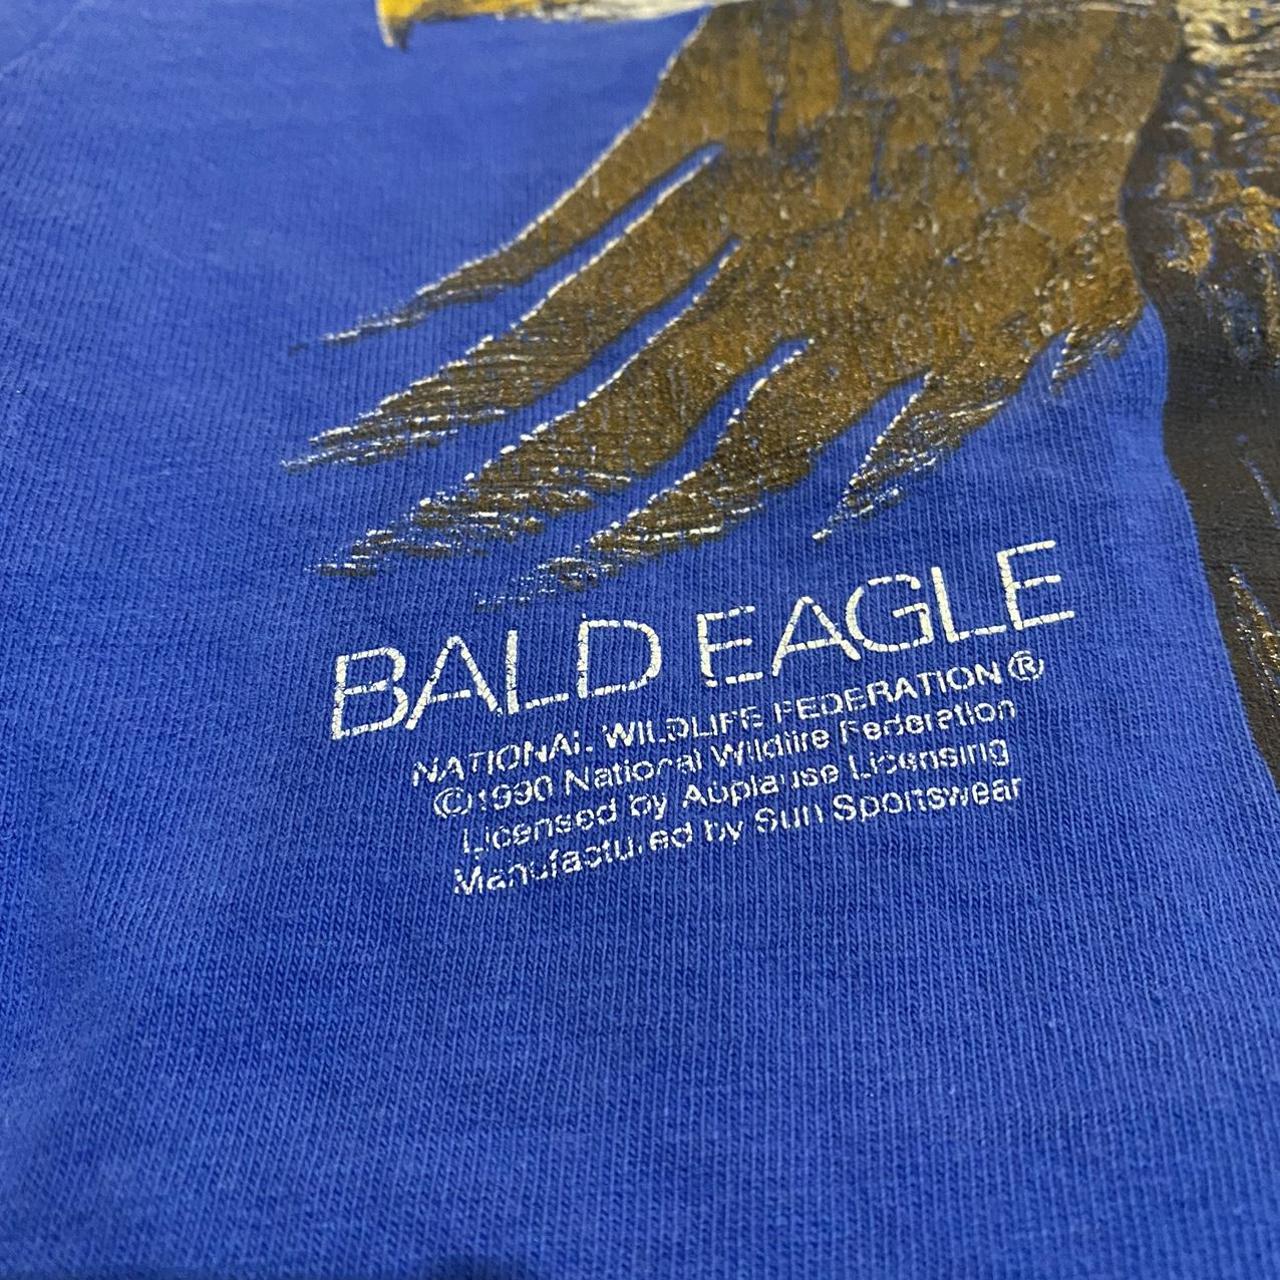 Bald Eagle  National Wildlife Federation